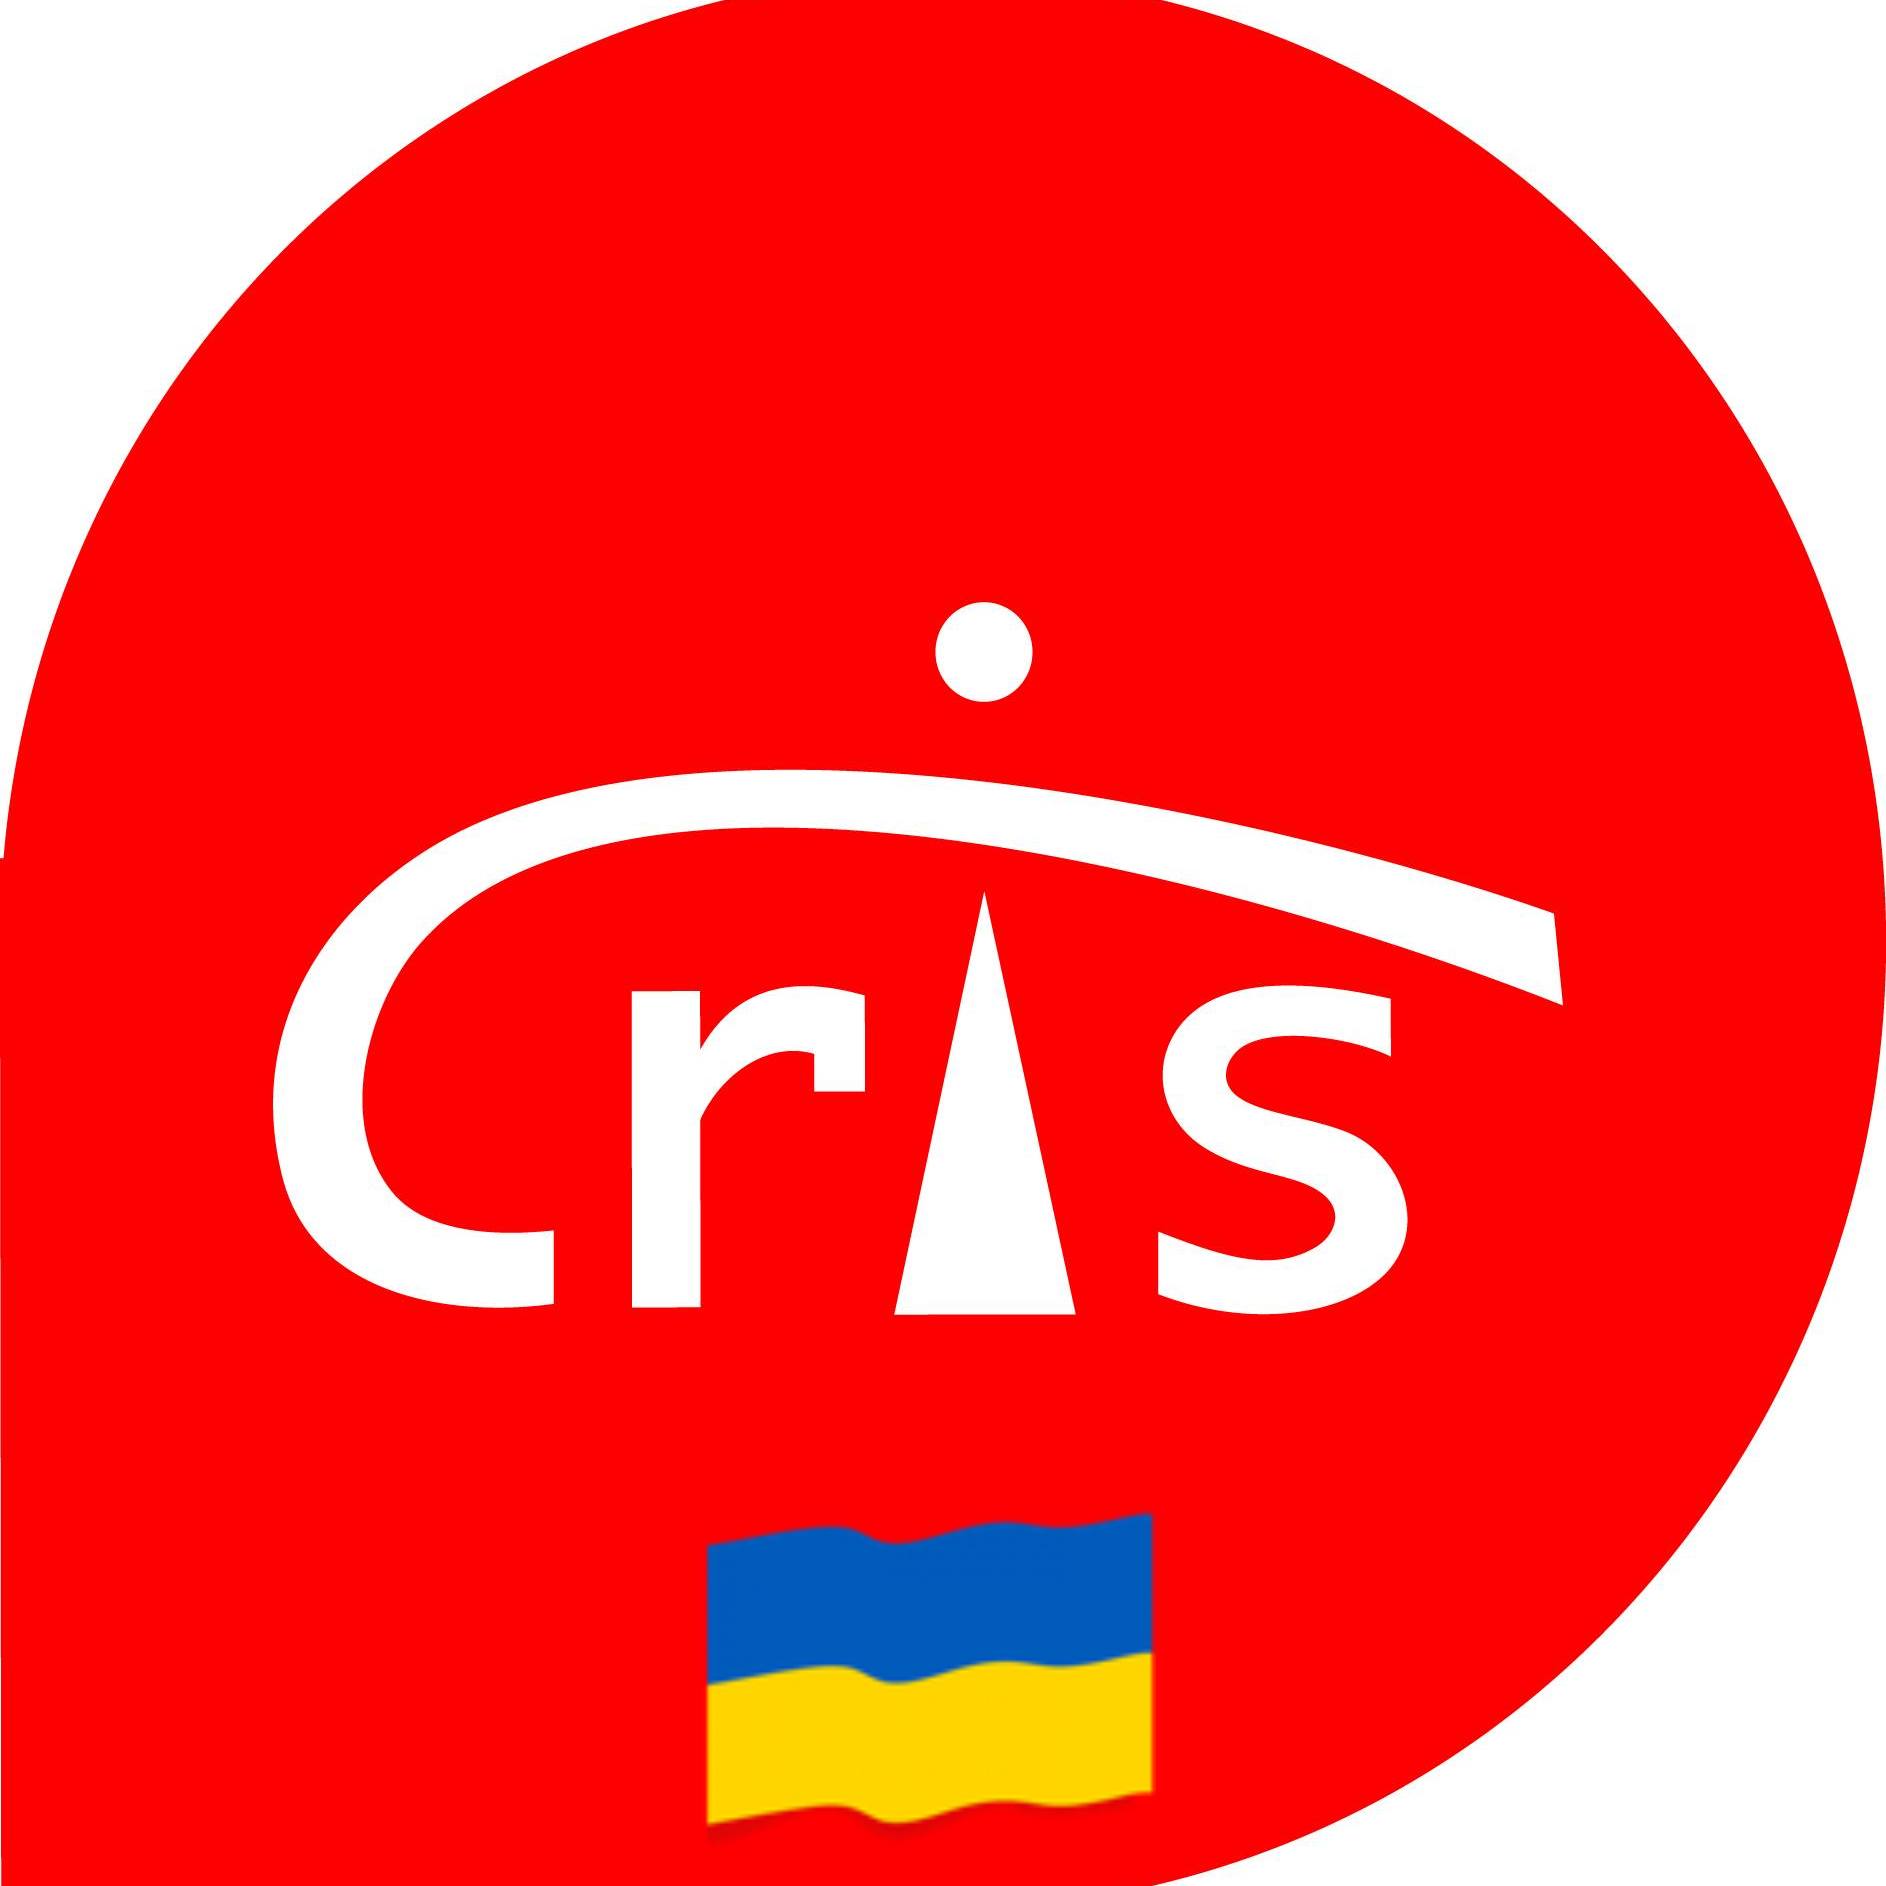 Centrum Rozwoju Inicjatyw Społecznych CRIS